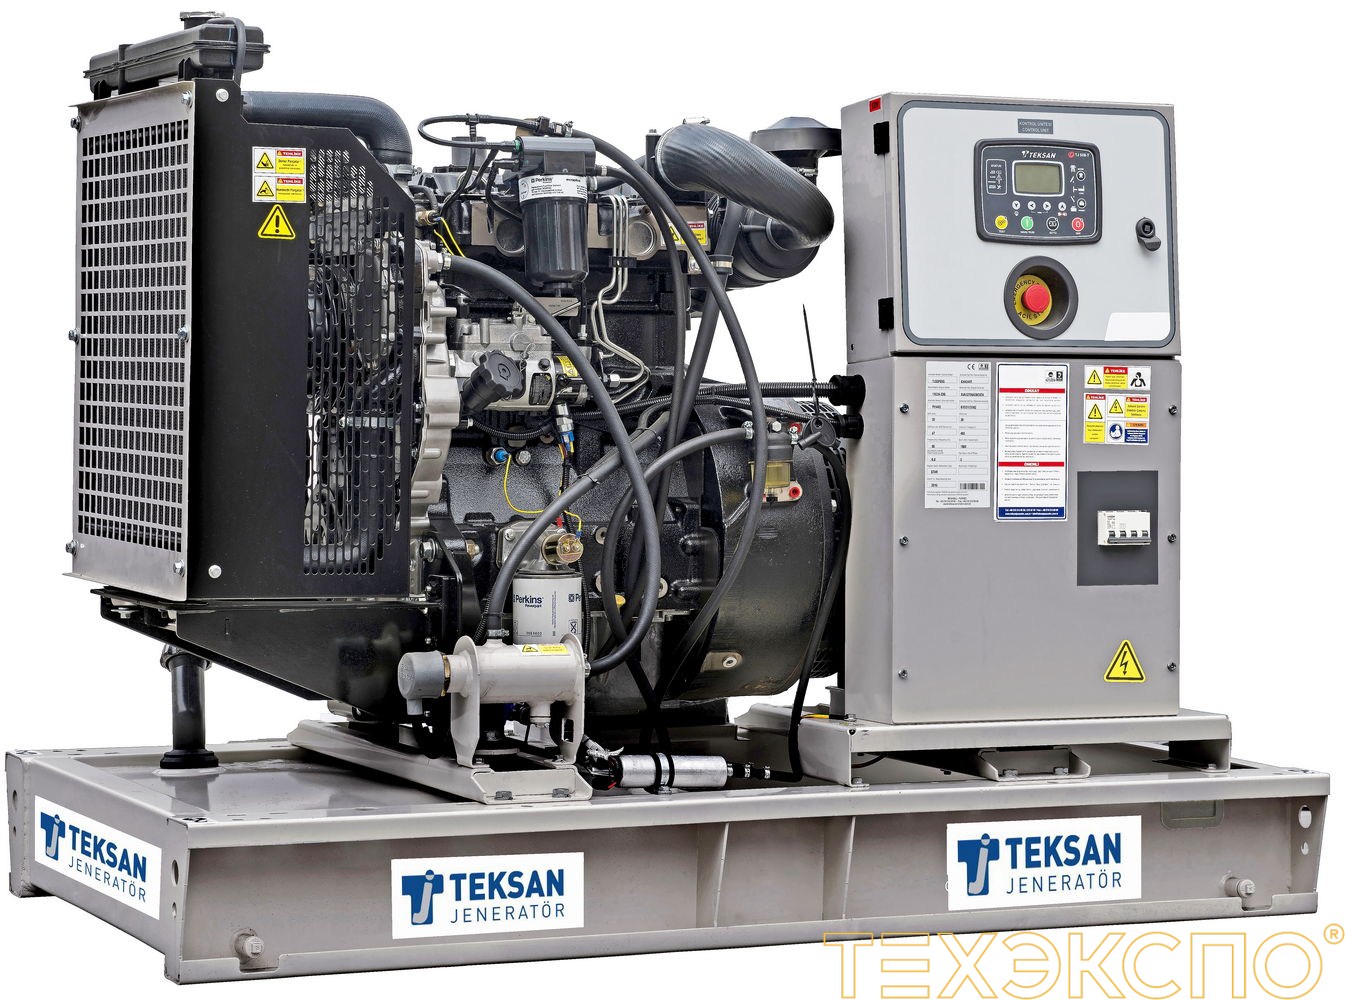 Teksan TJ50PE5C - ДЭС 36 кВт в Санкт-Петербурге за 1 251 475 рублей | Дизельная электростанция в Техэкспо